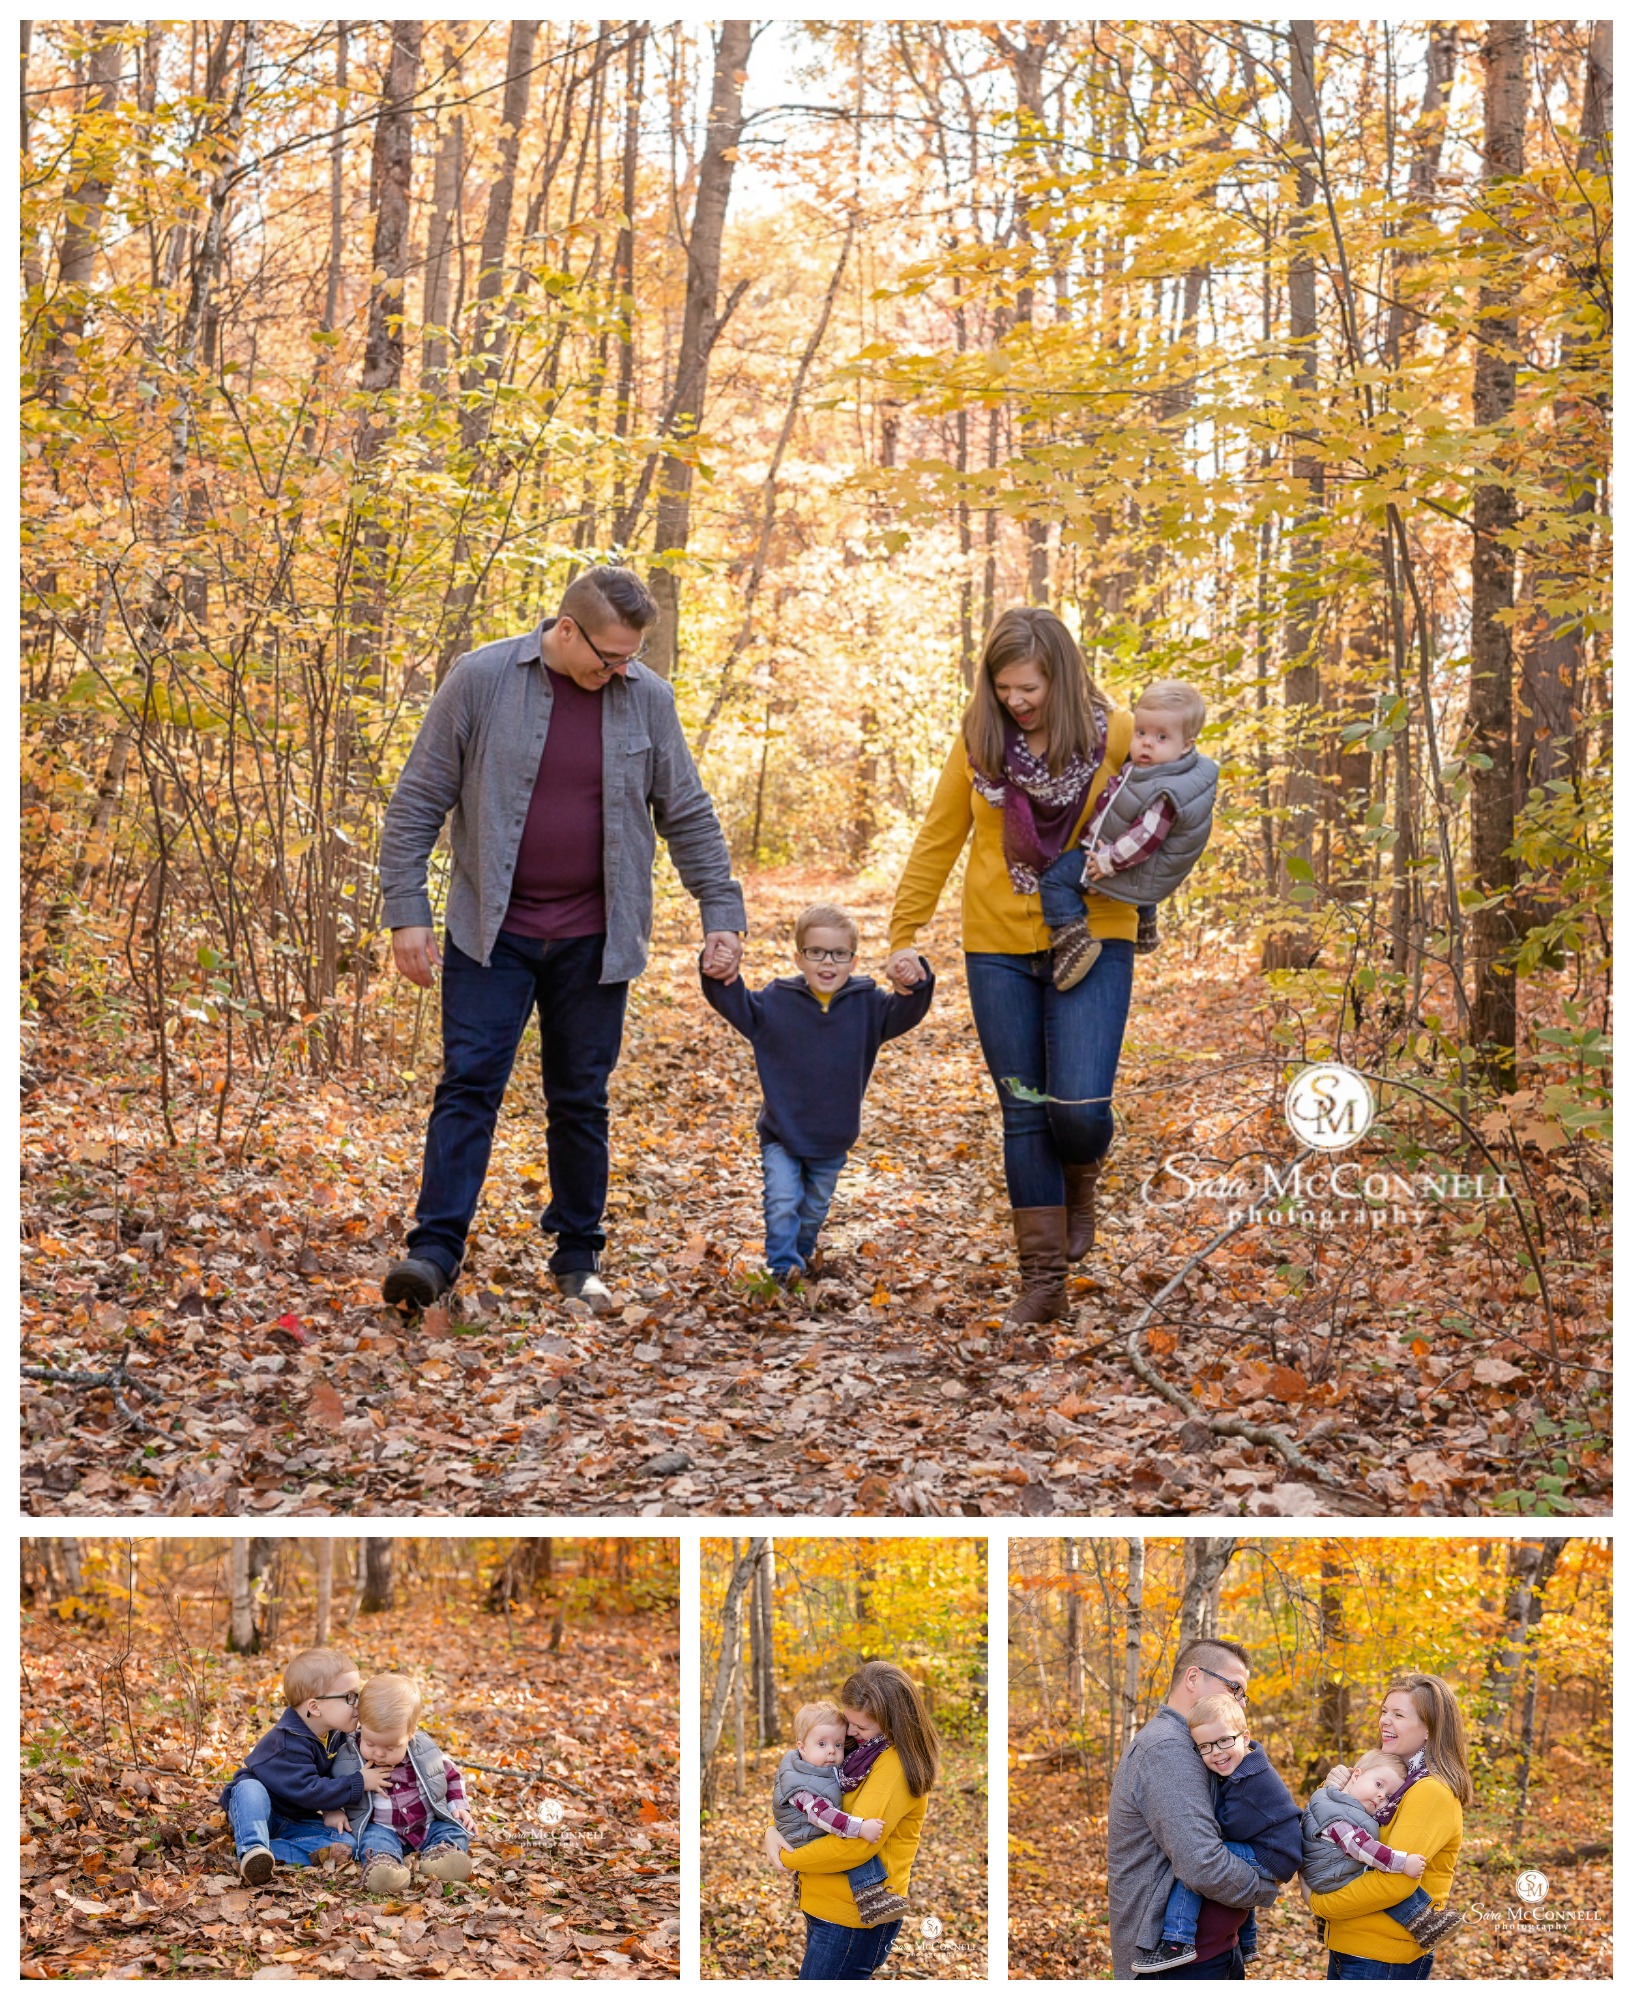 Ottawa Family Photographer | Fall Photos in Ottawa